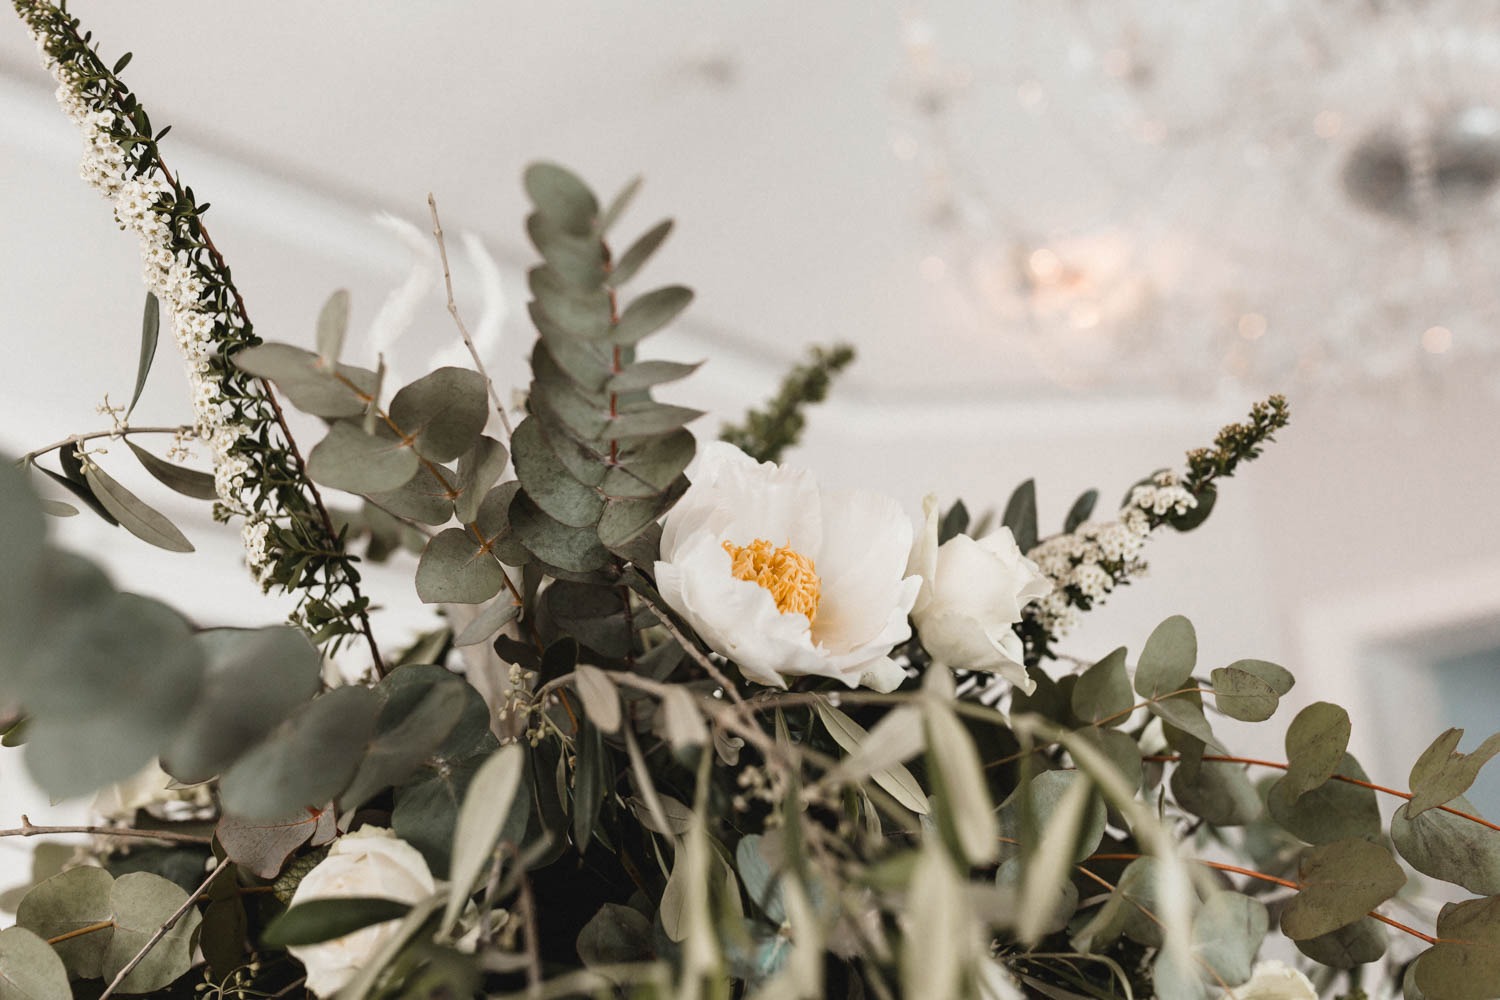 Geometrische Center Pieces mit Blumengesteck für Hochzeit mit viel grünen Elementen, wie Eukalyptus und Oliven, aus weißen, saisonalen Blüten (Pfingstrose und Rose) und getrocknetem Pampasgras